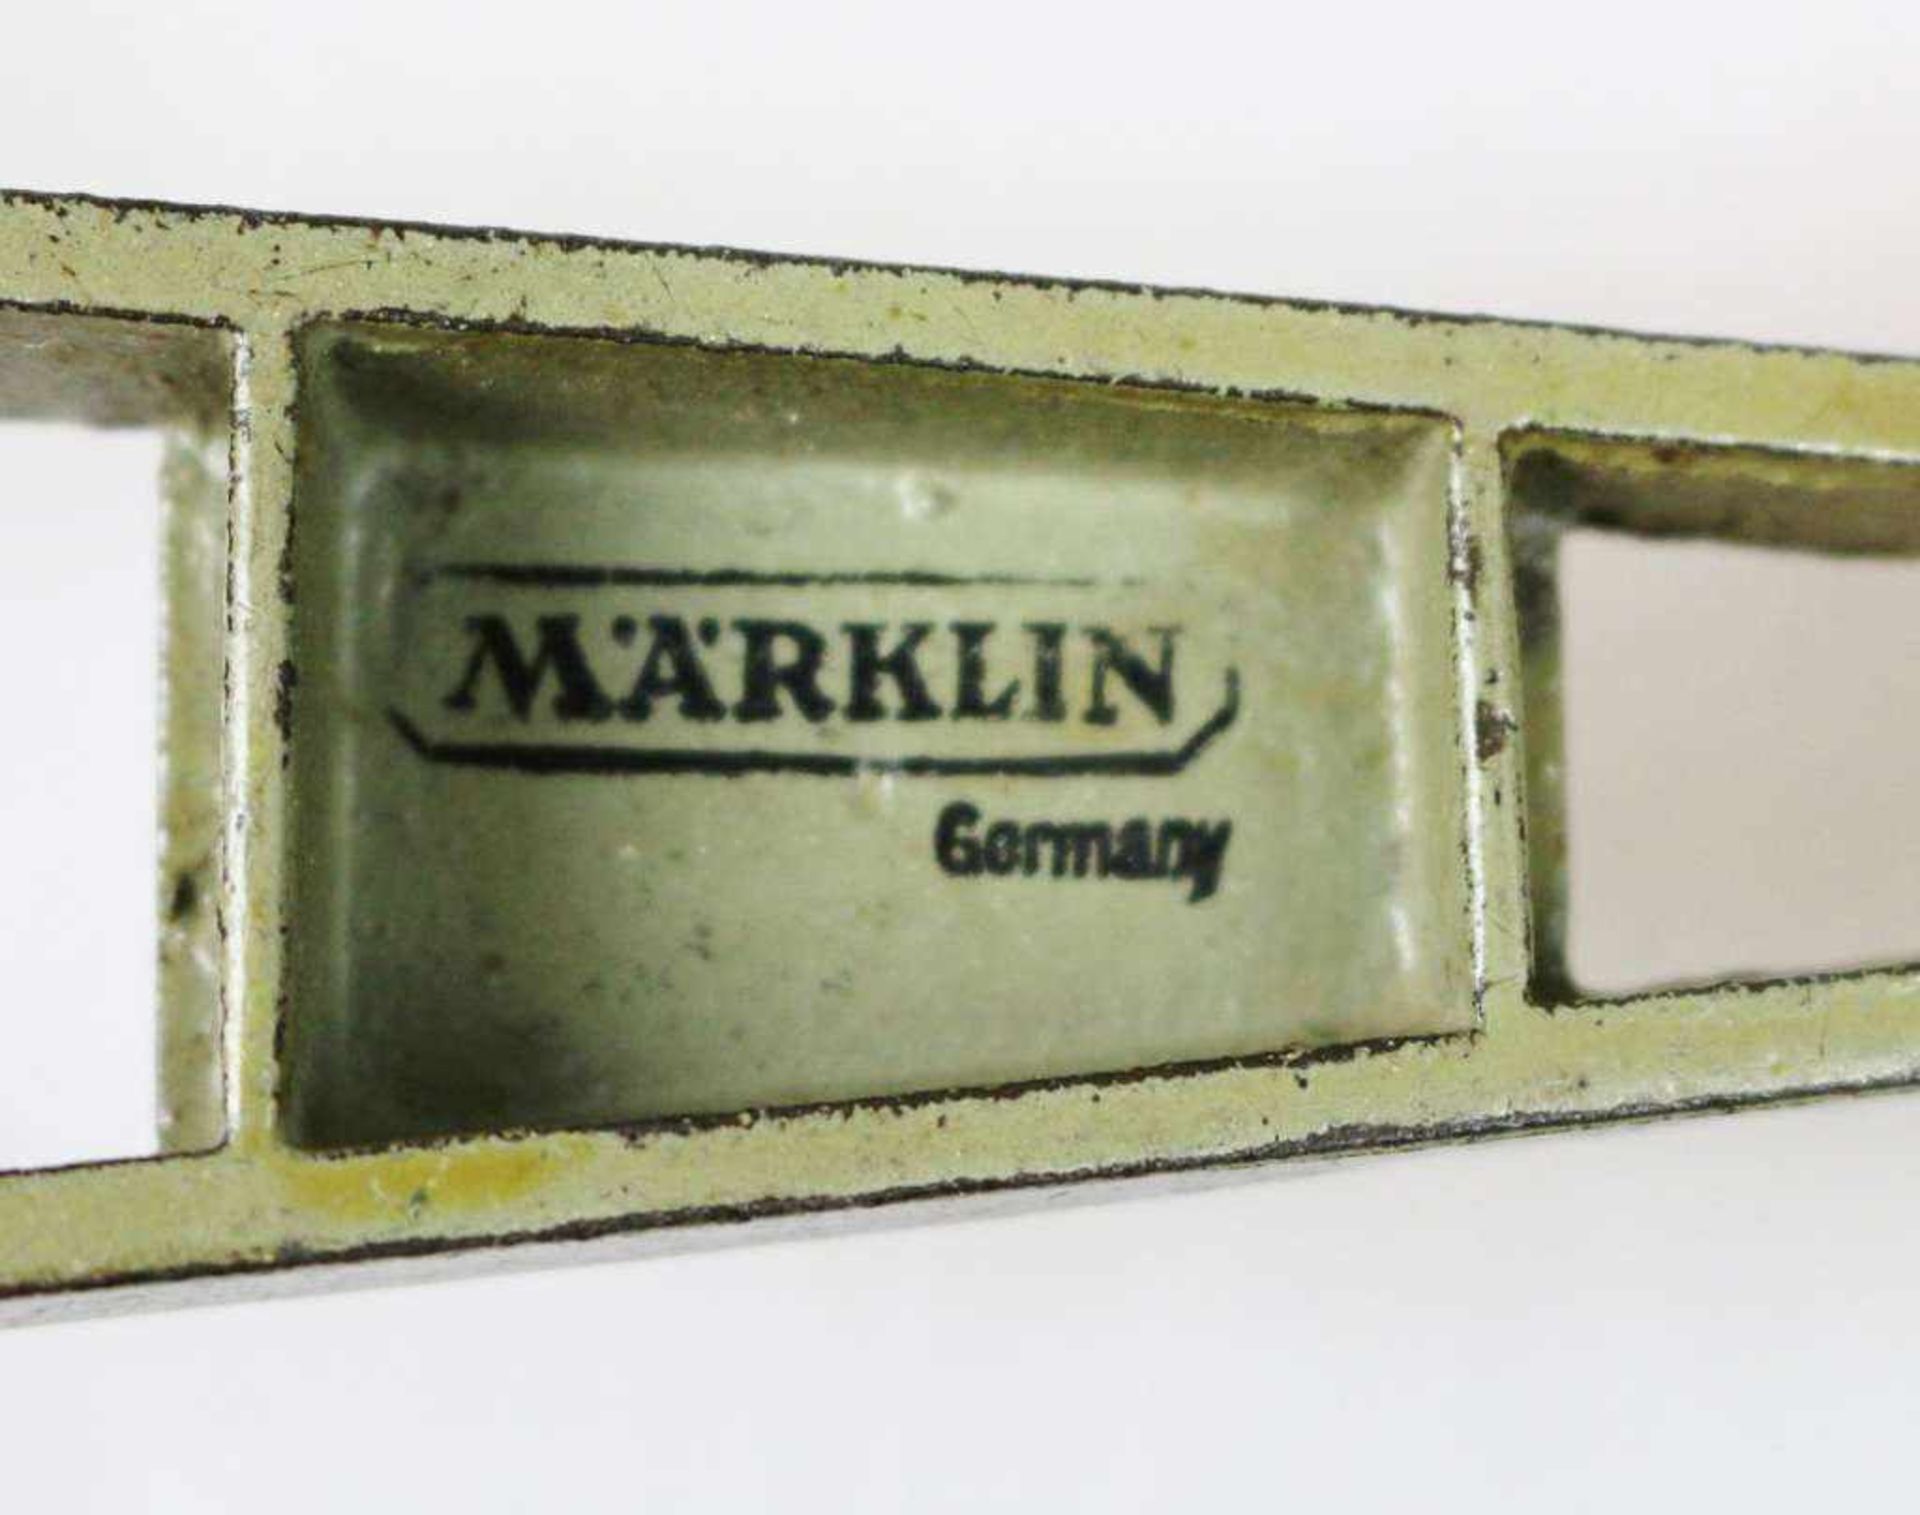 Märklin, Germany, große Metall-Kanone, feldgrau lack.. Verschluß zum Verschießen von Amorces, - Bild 5 aus 5